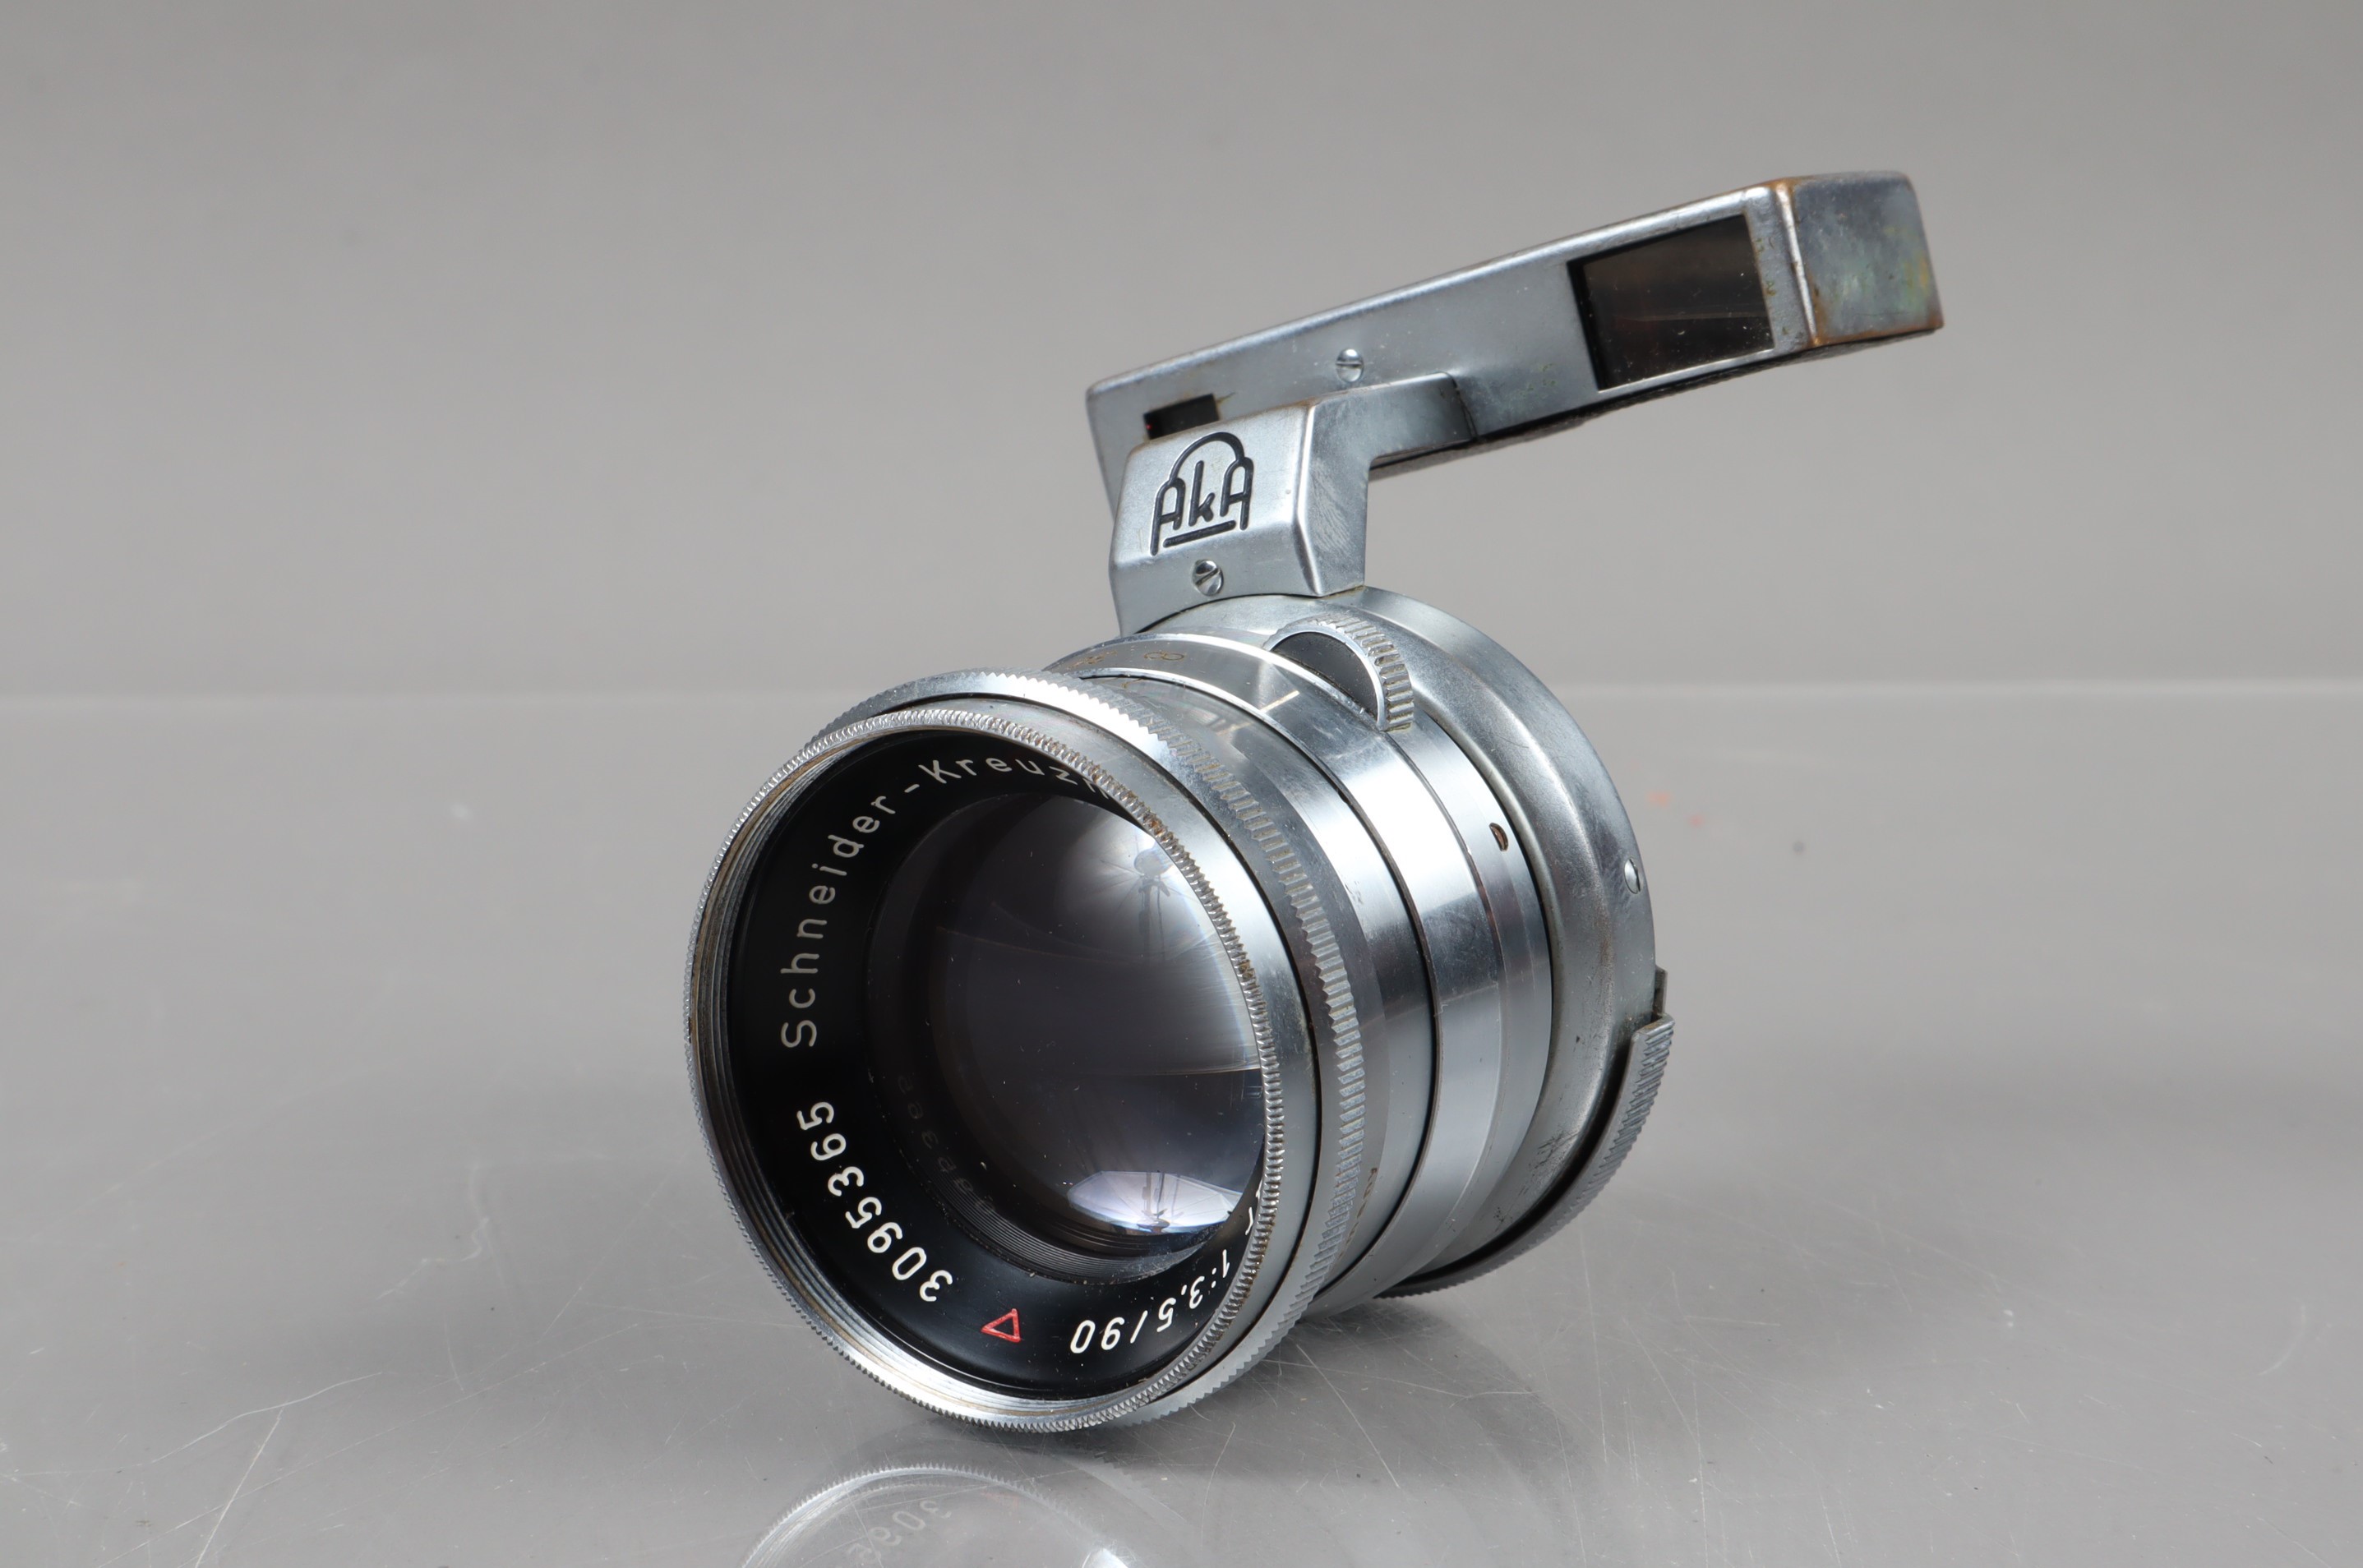 A Schneider Kreuznach 90mm f/3.5 Tele Xenar Lens, Akarex III Rangefinder mount, serial no 3095369,